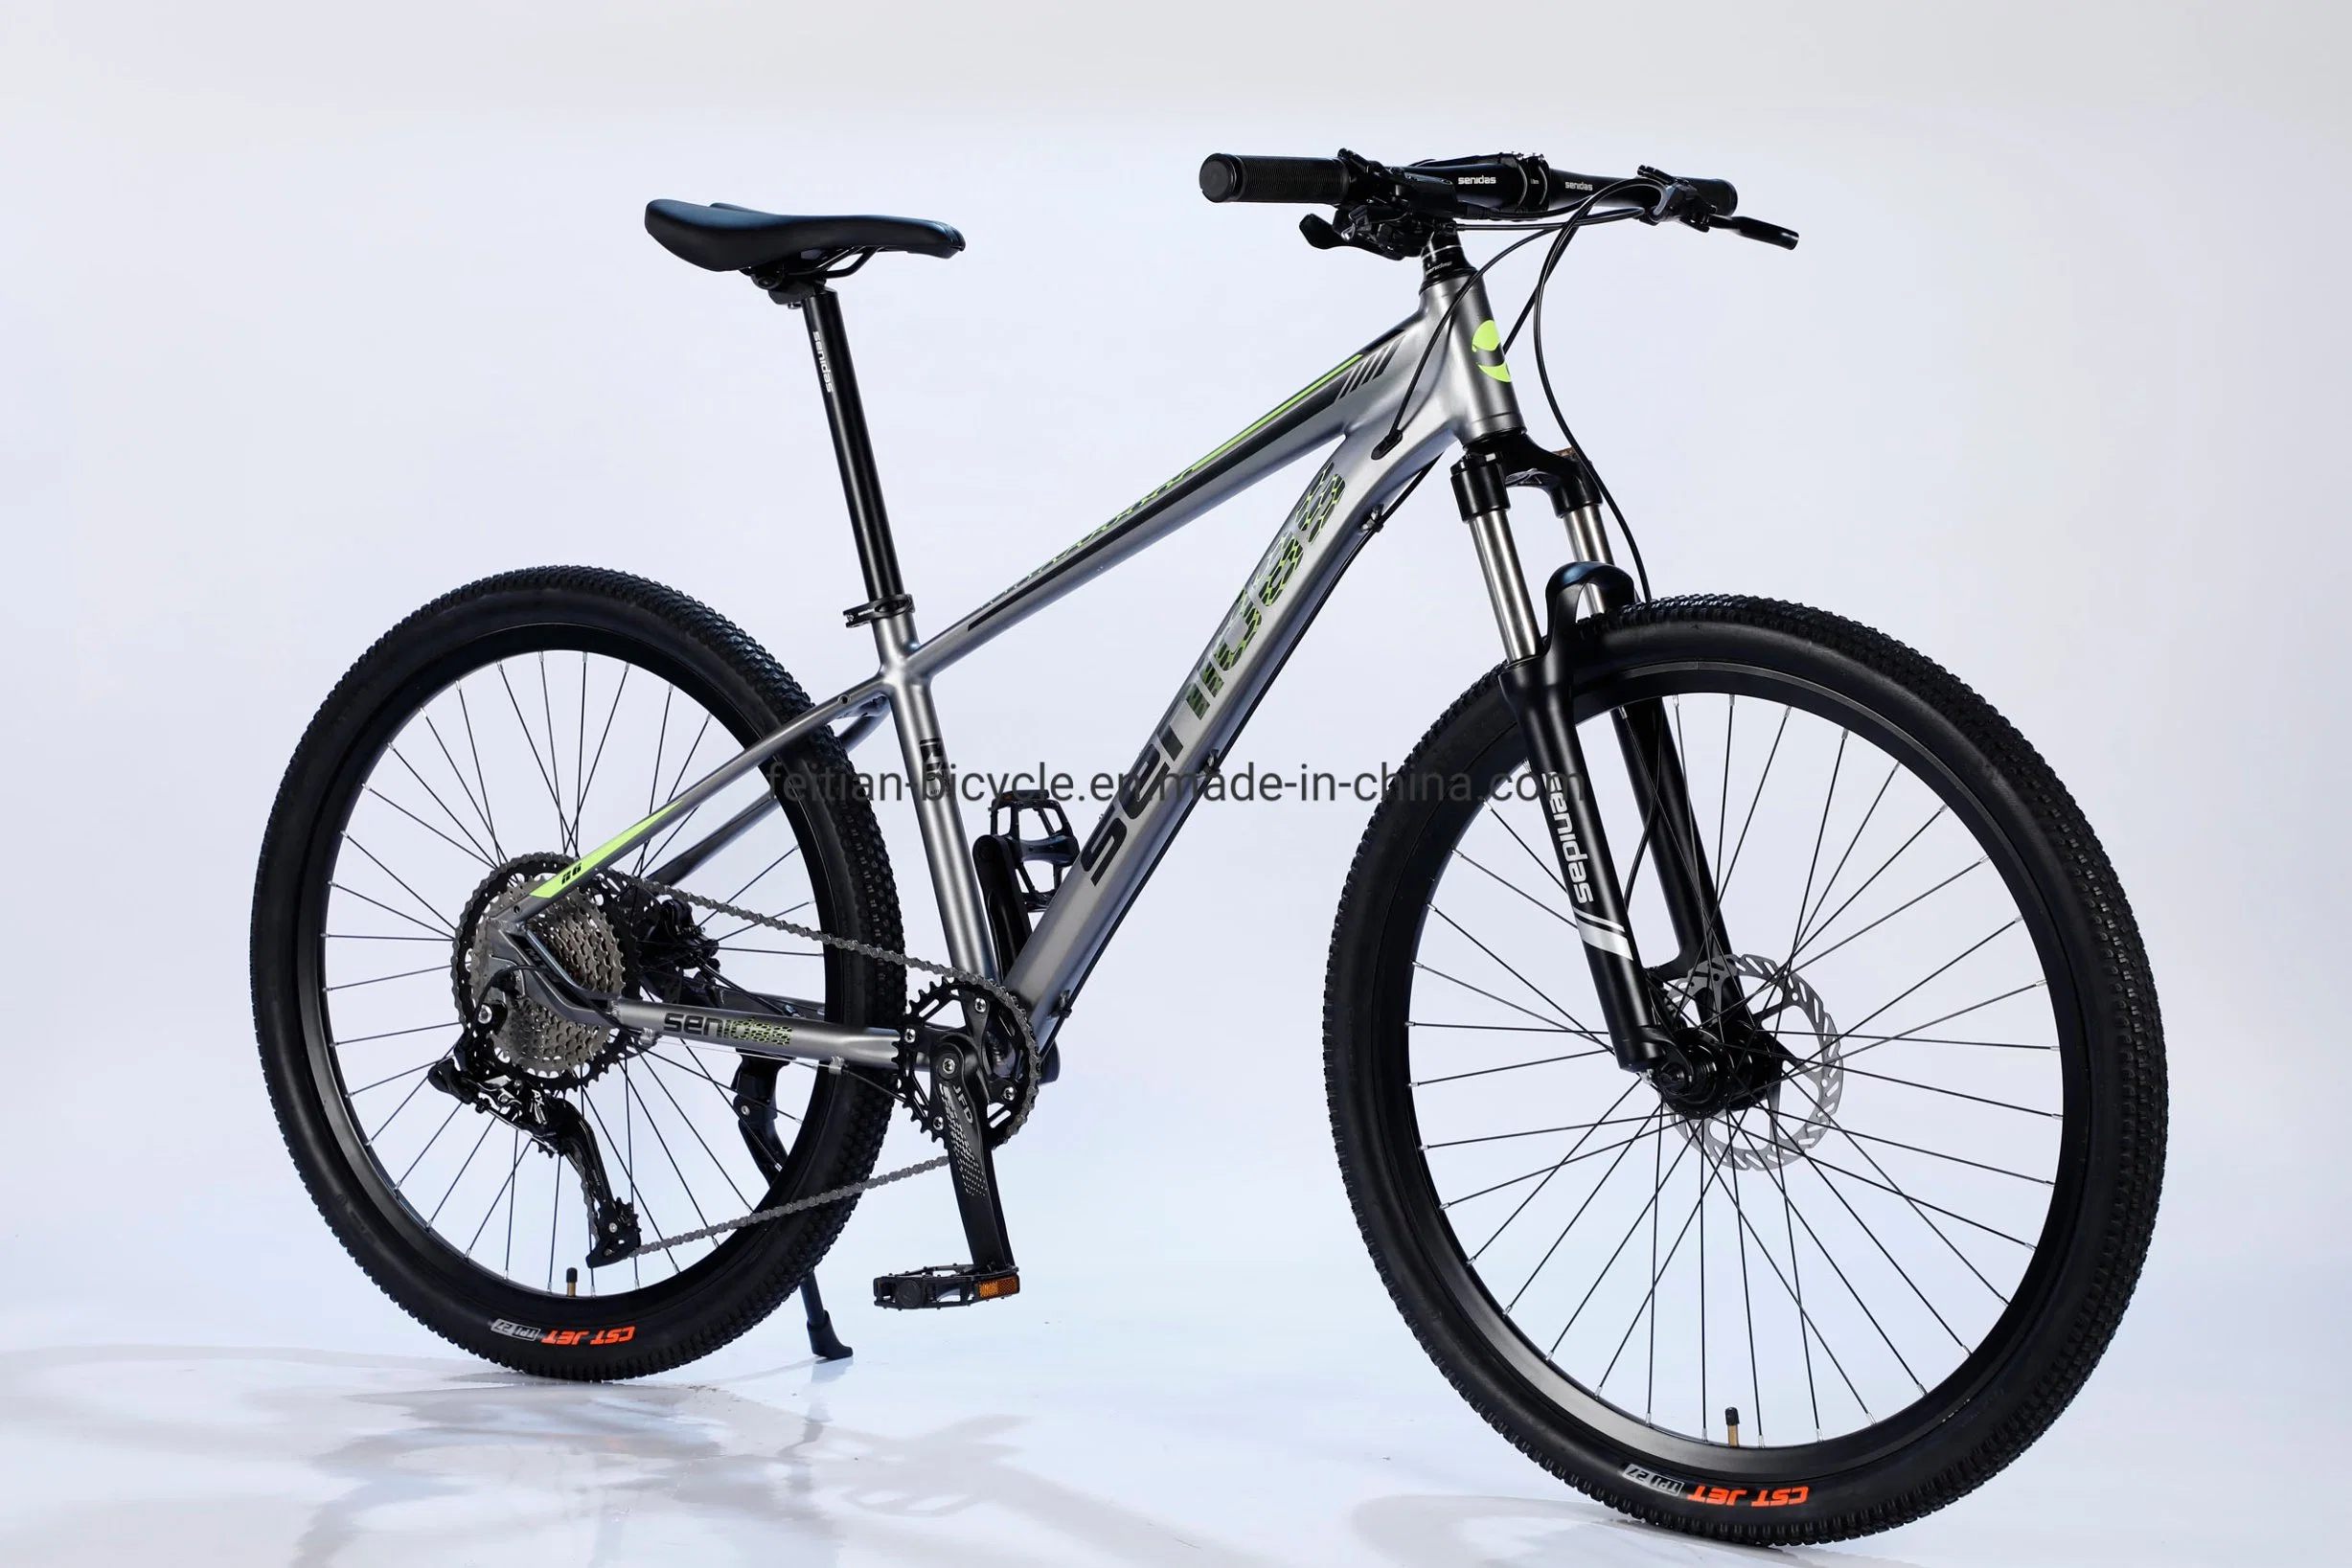 Vélo de montagne 29 pouces VTT/Vélos pour adultes Modèle VTT/Vélo de montagne avec cadre en alliage d'aluminium en vente chaude Chine.